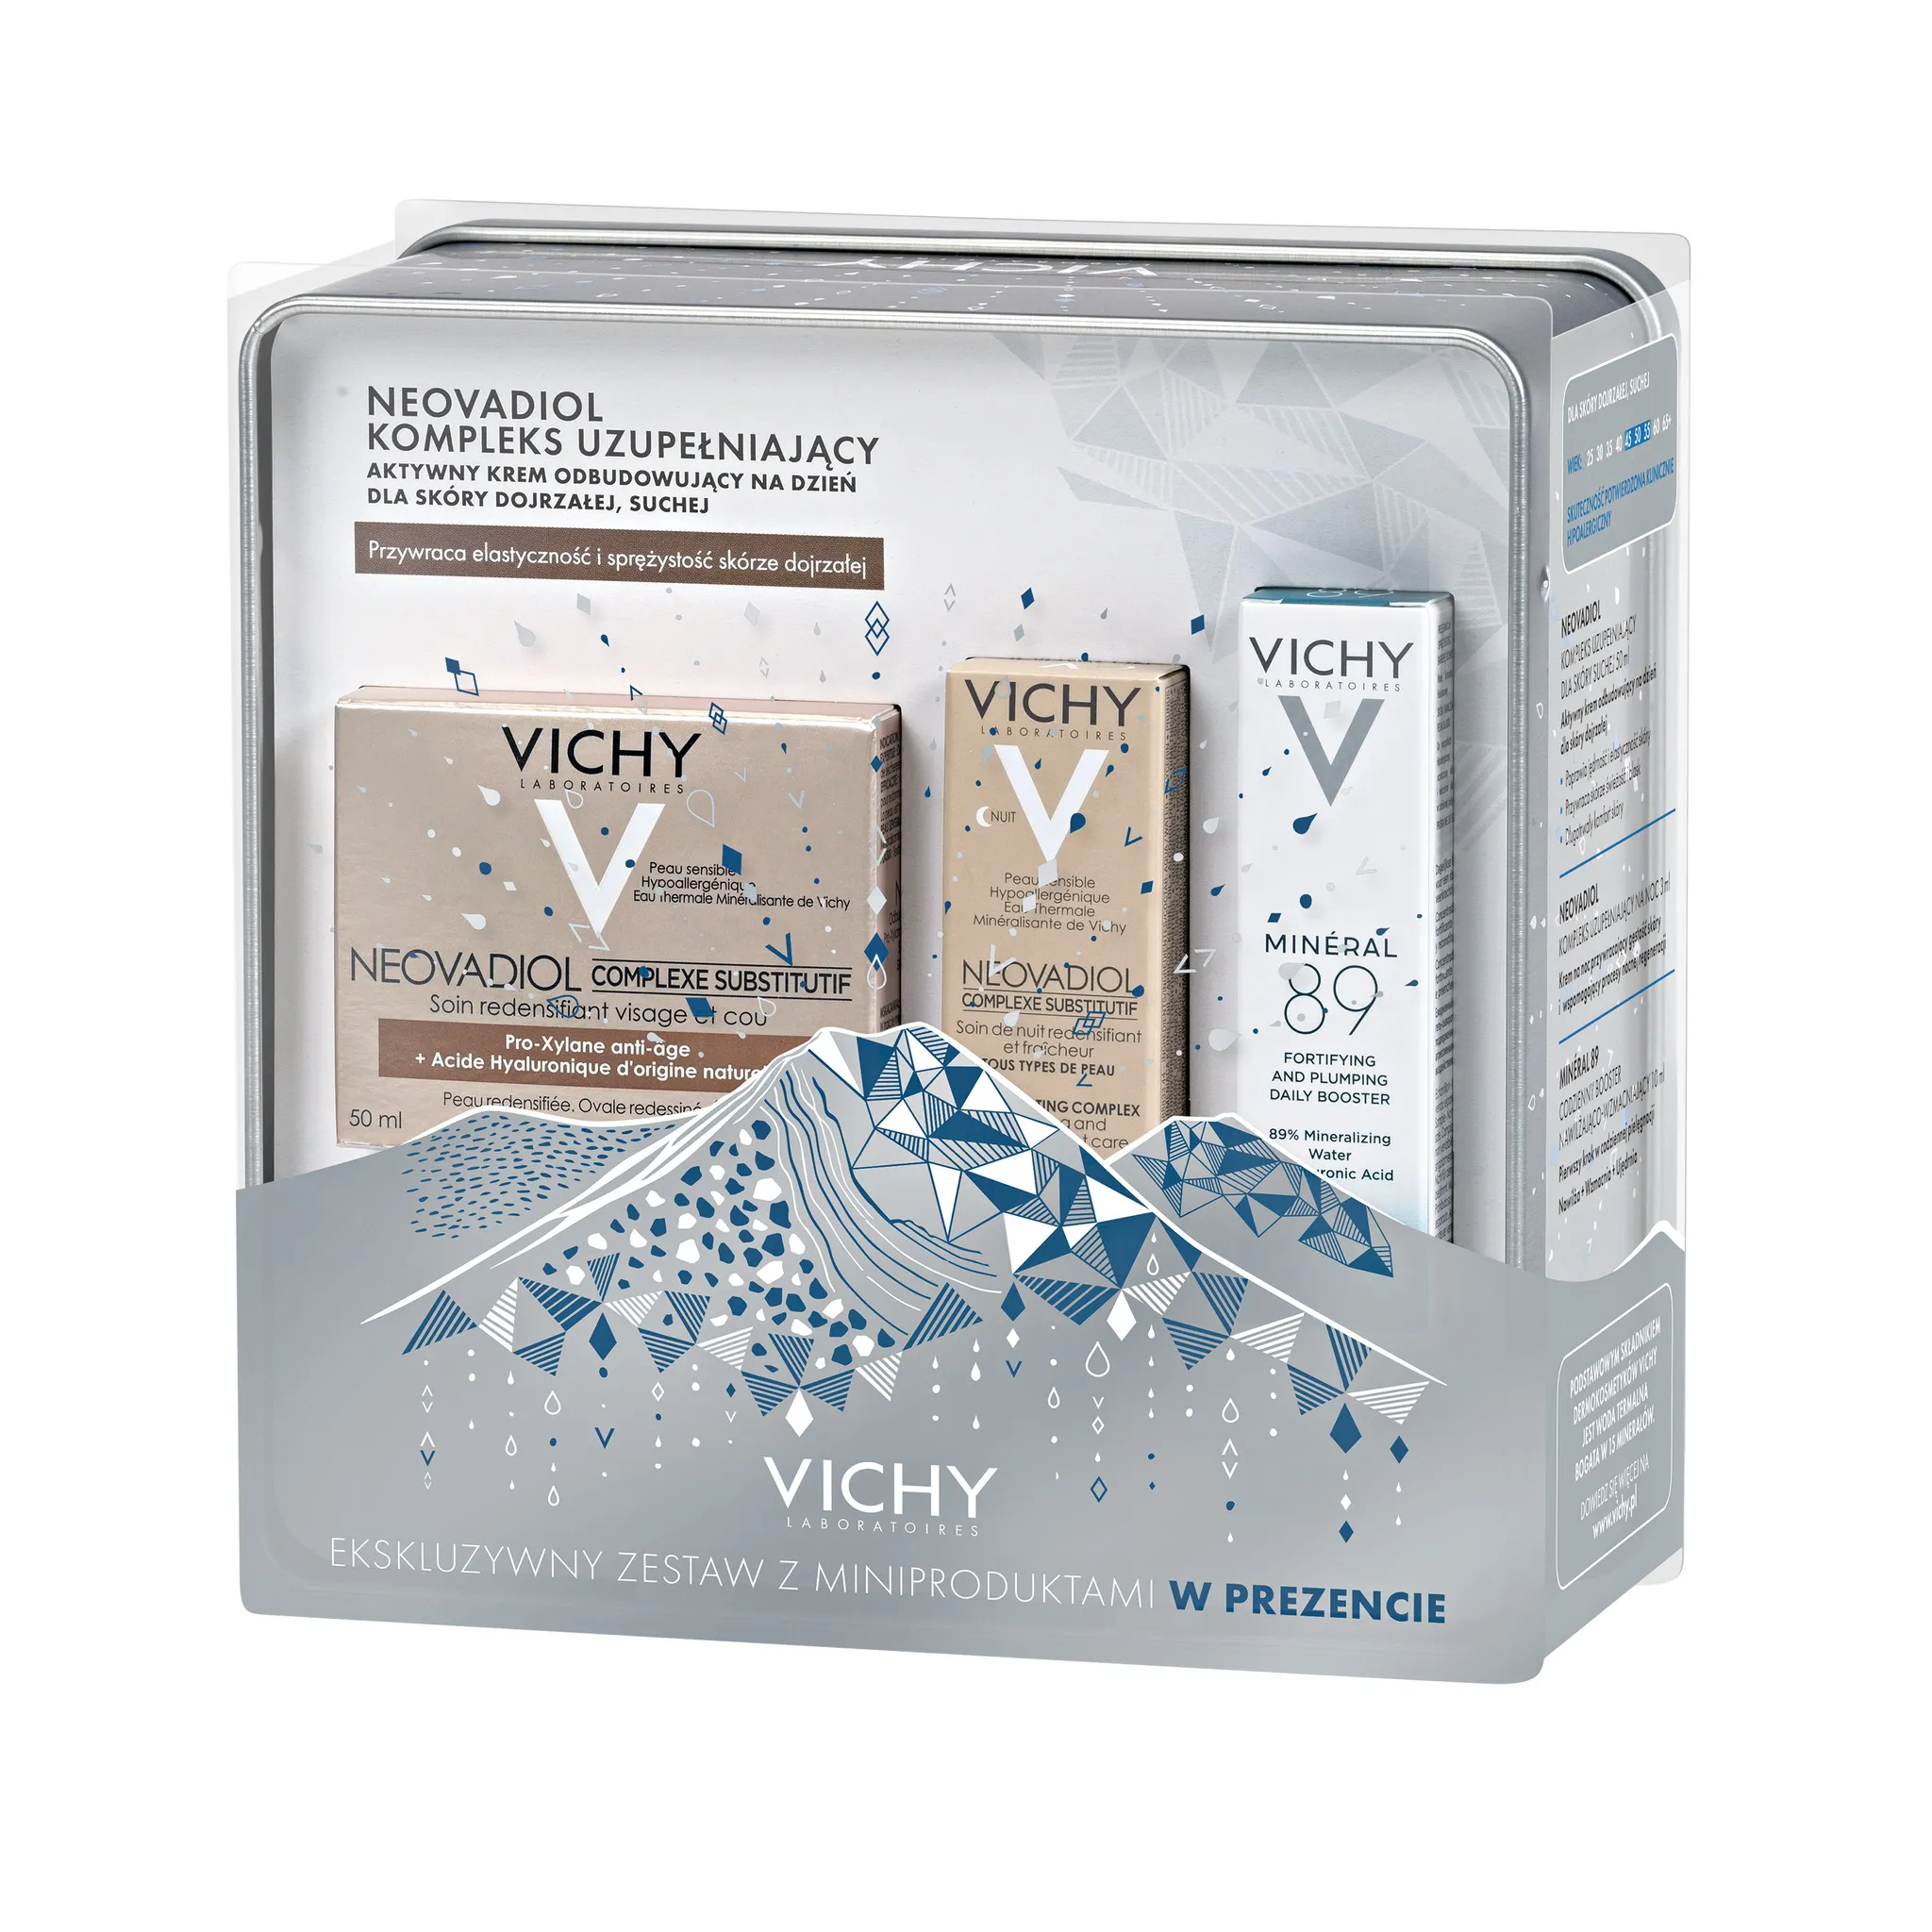 Vichy zestaw Neovadiol Kompleks Uzupełniający, krem do skóry suchej, 50 ml + codzienny booster Mineral 89, 10 ml  + krem na noc, 3 ml